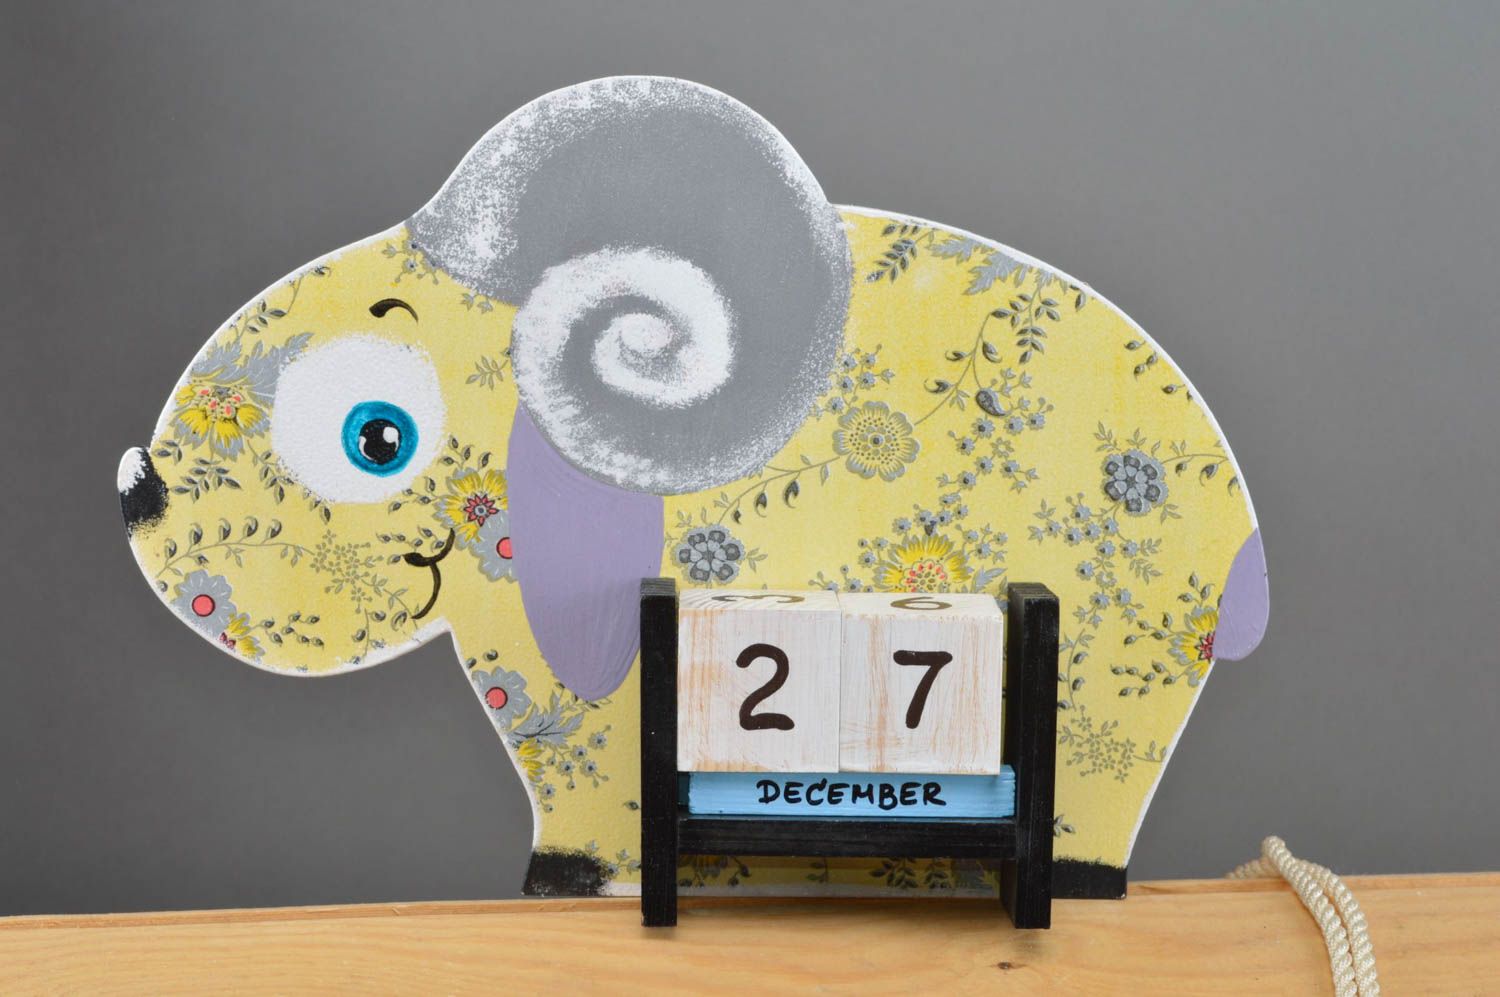 Календарь в виде овечки небольшой в желтых тонах красивая декупаж ручной работы фото 2